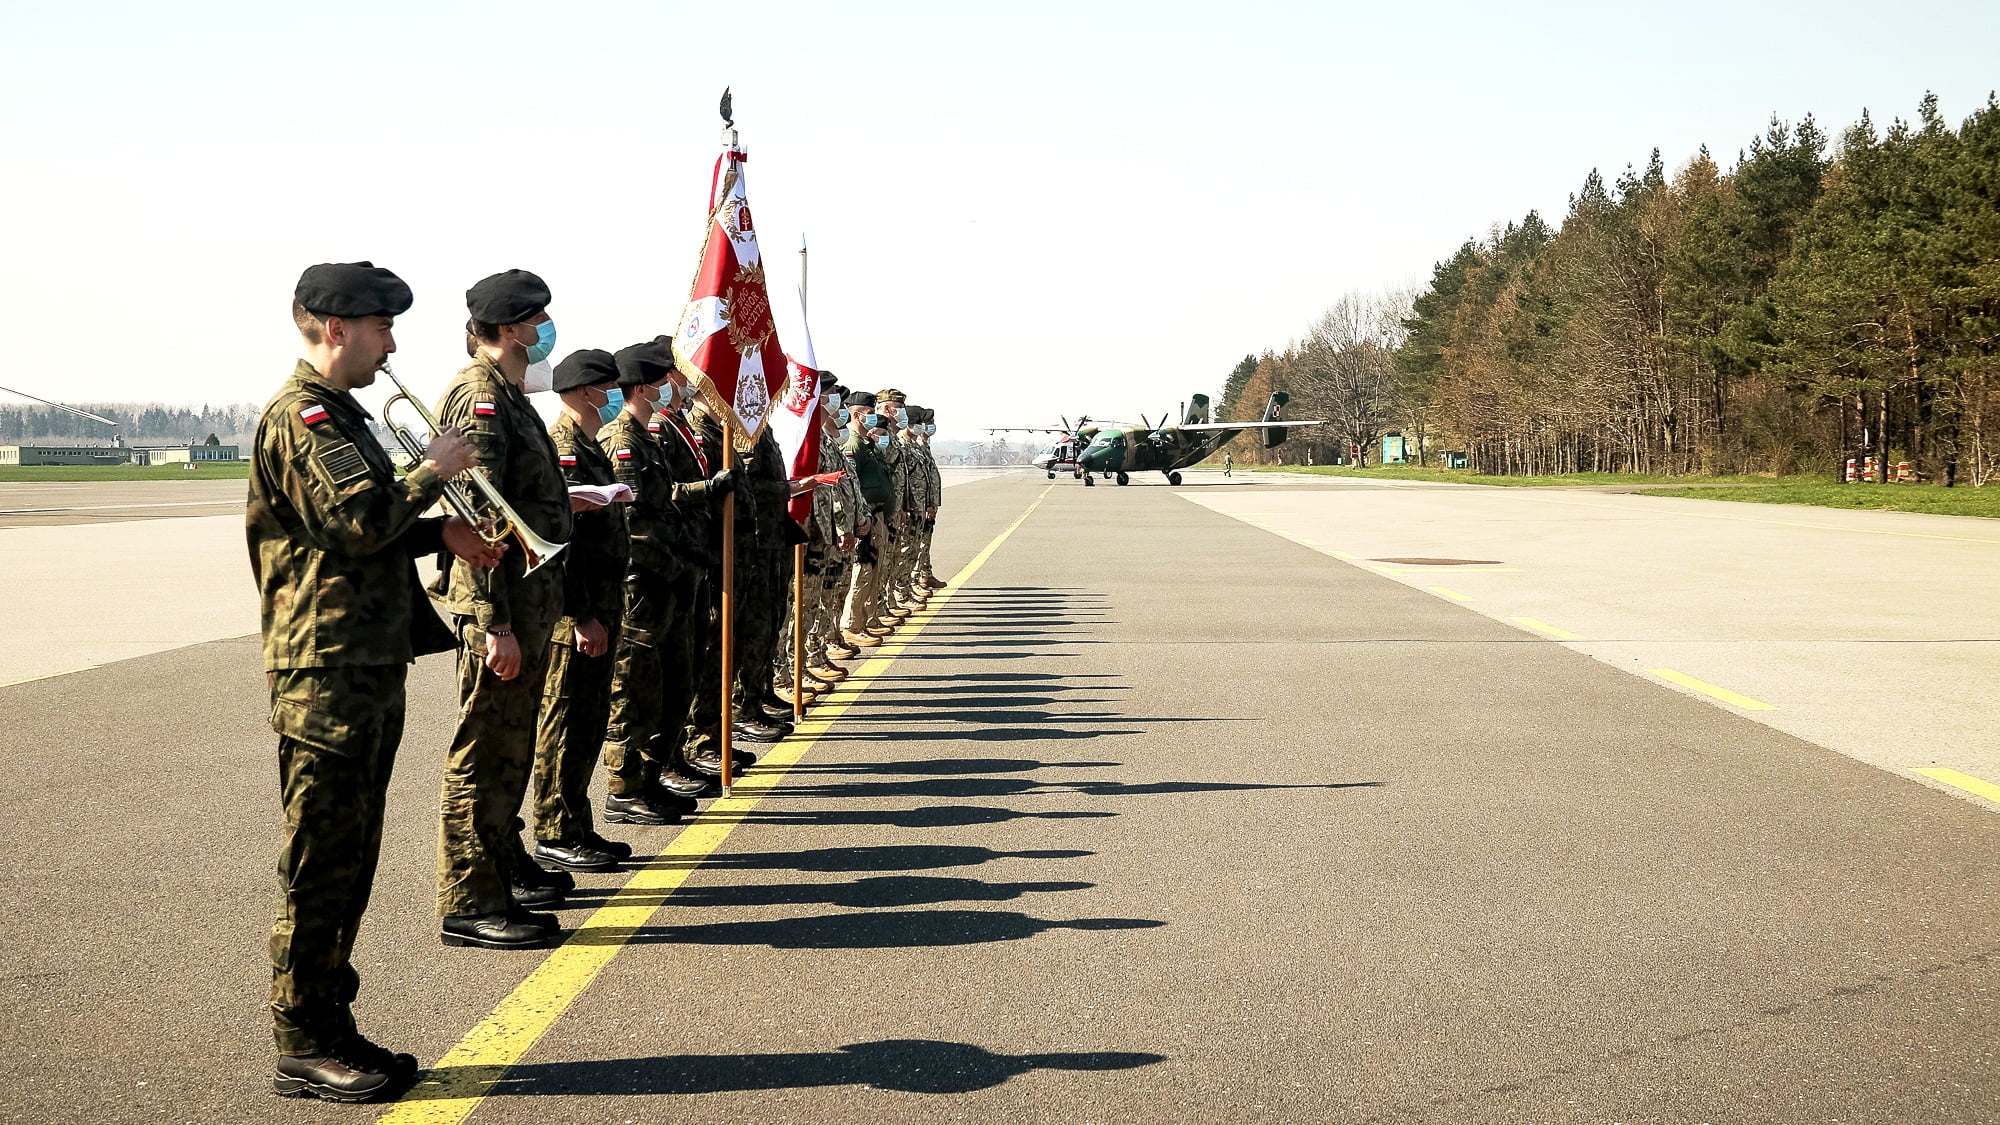 Το ΝΑΤΟ Αναπτύσσει Πολωνικά Στρατεύματα στην Τουρκία για Πόλεμο με τη Συρία